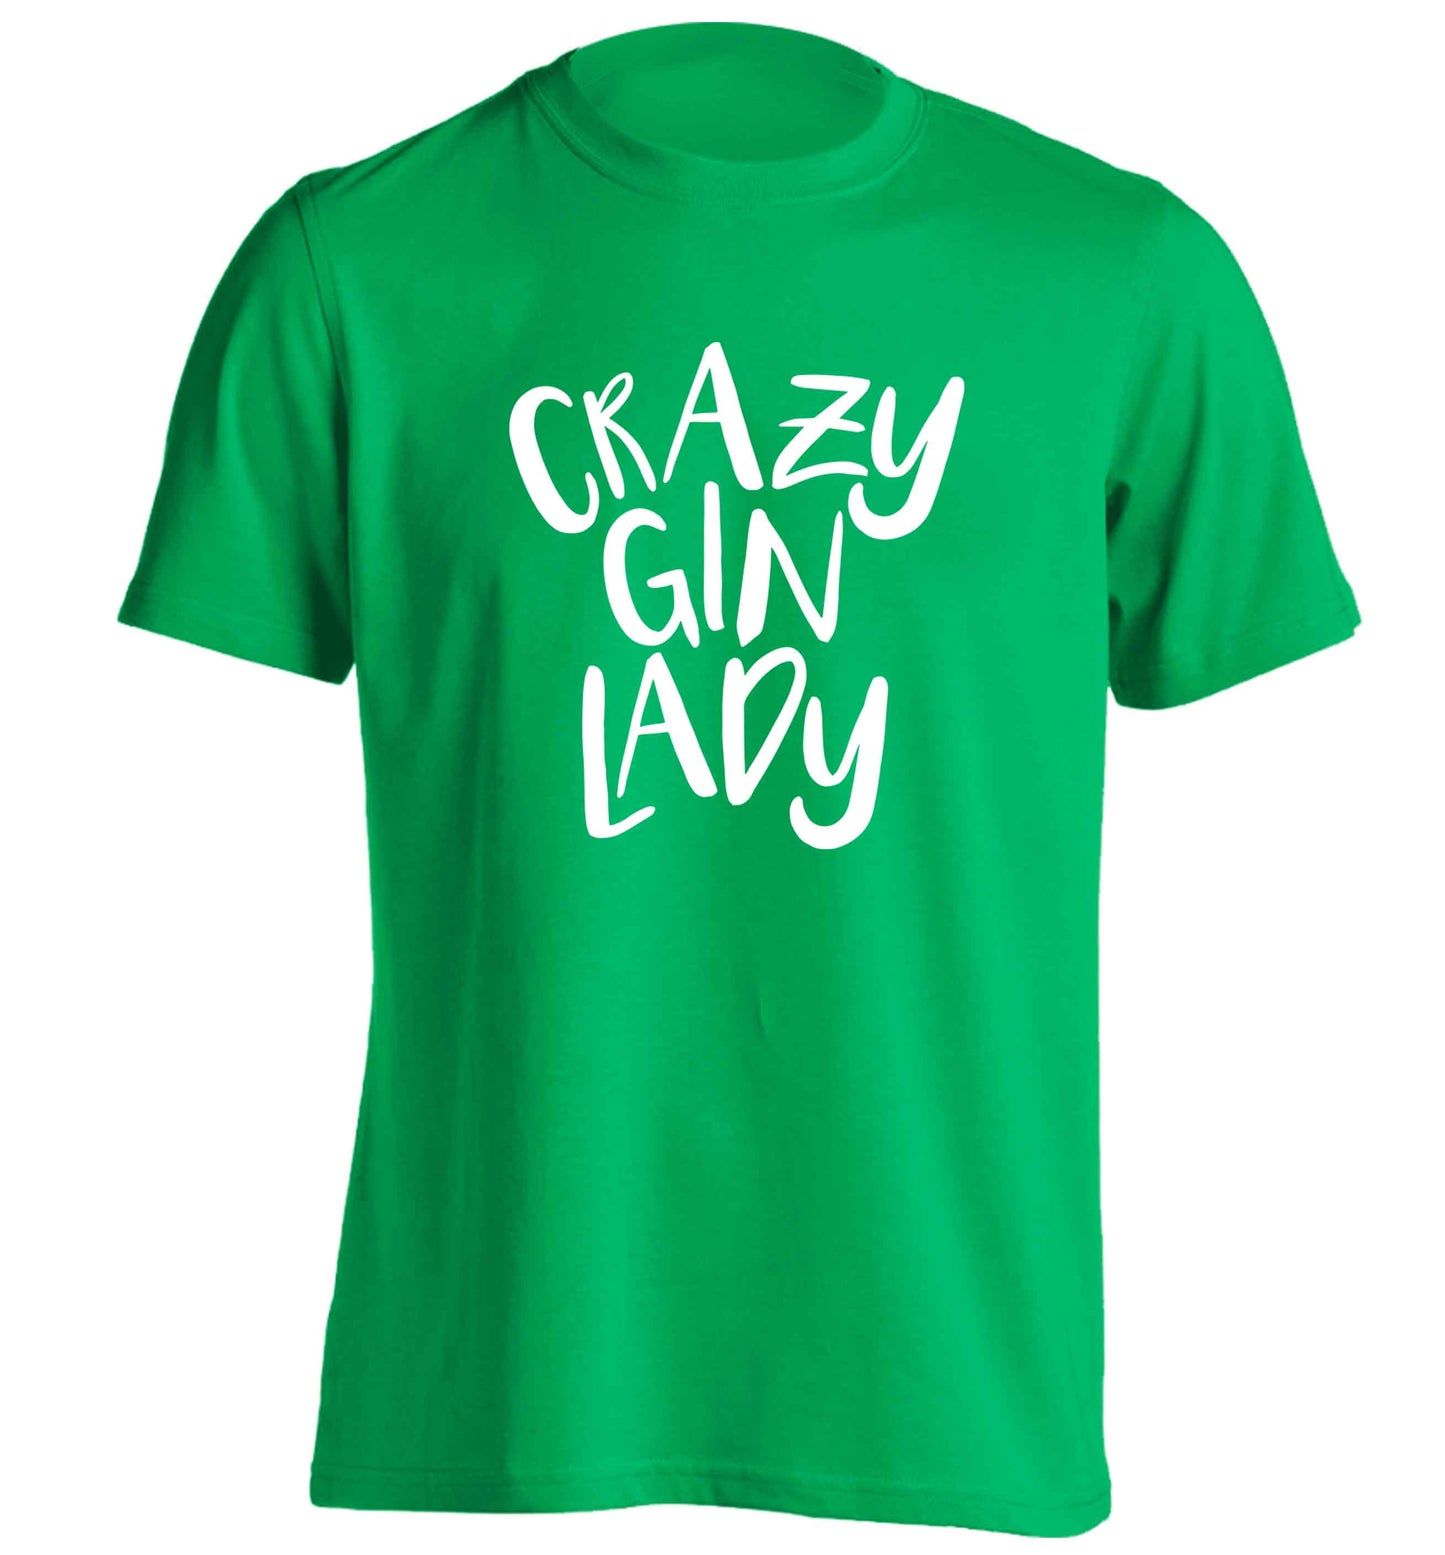 Crazy gin lady adults unisex green Tshirt 2XL